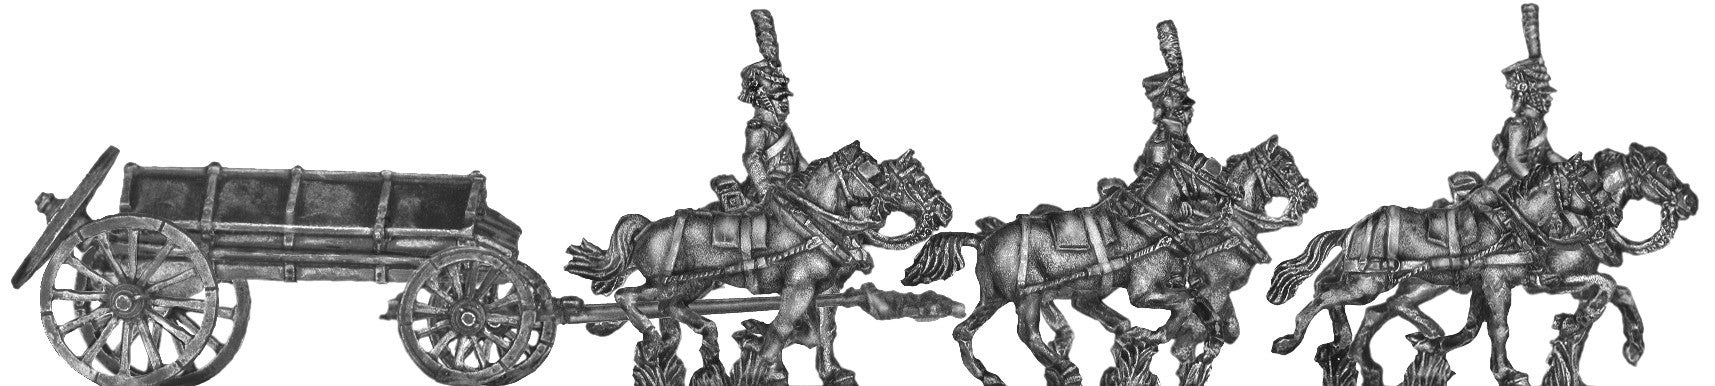 (AB-IG37) Guard horse artillery caisson (galloping)